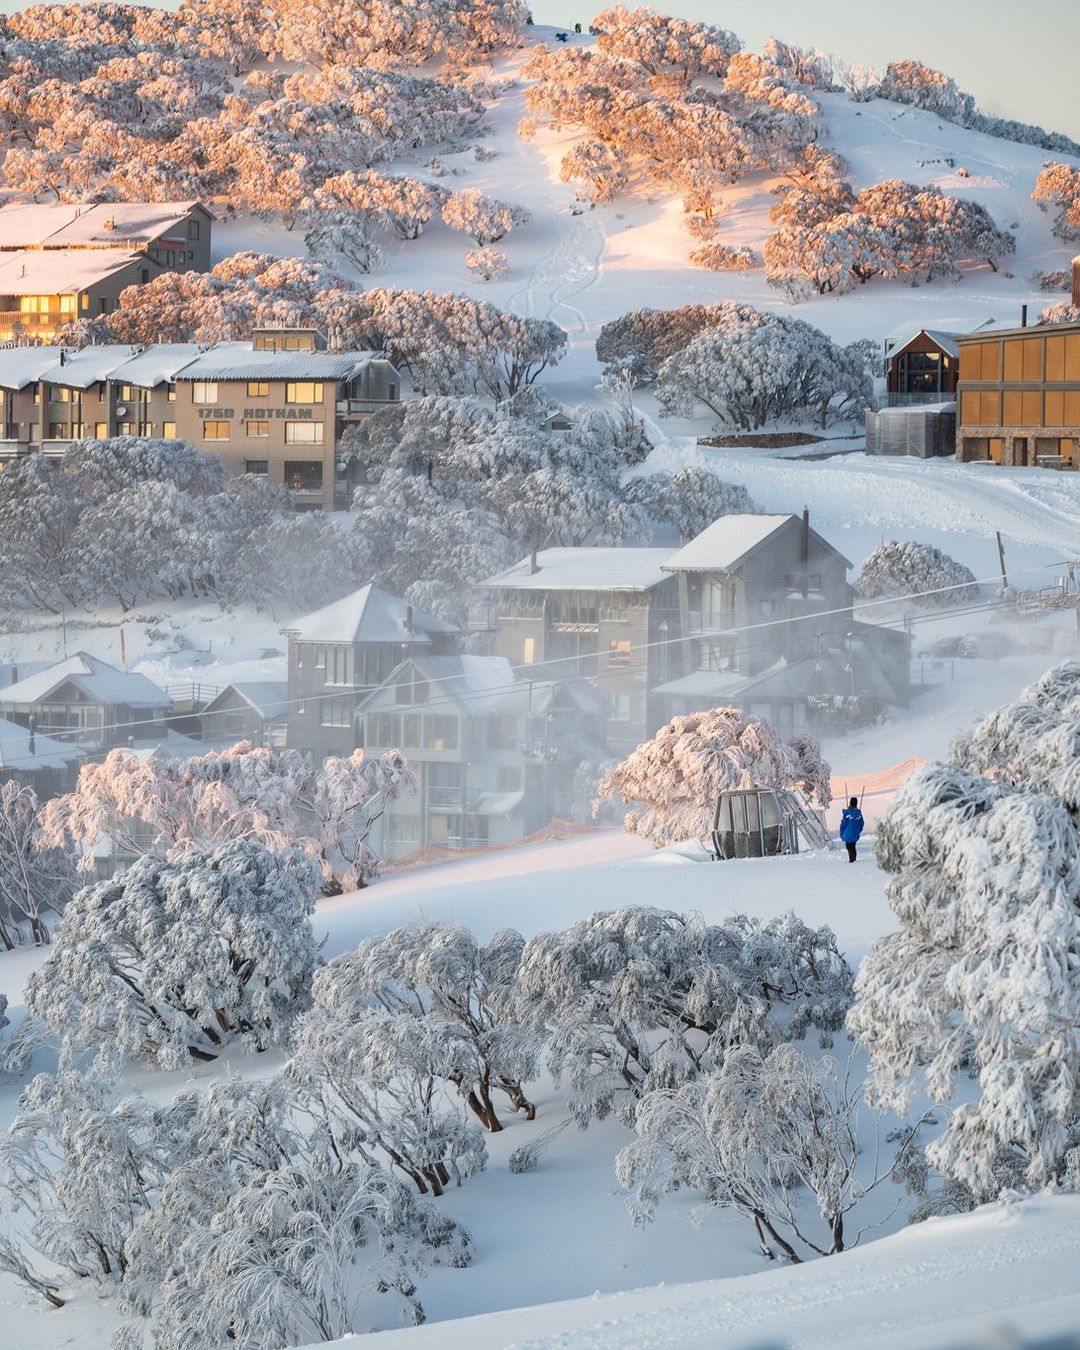 Winter destinations in australia - alpine village